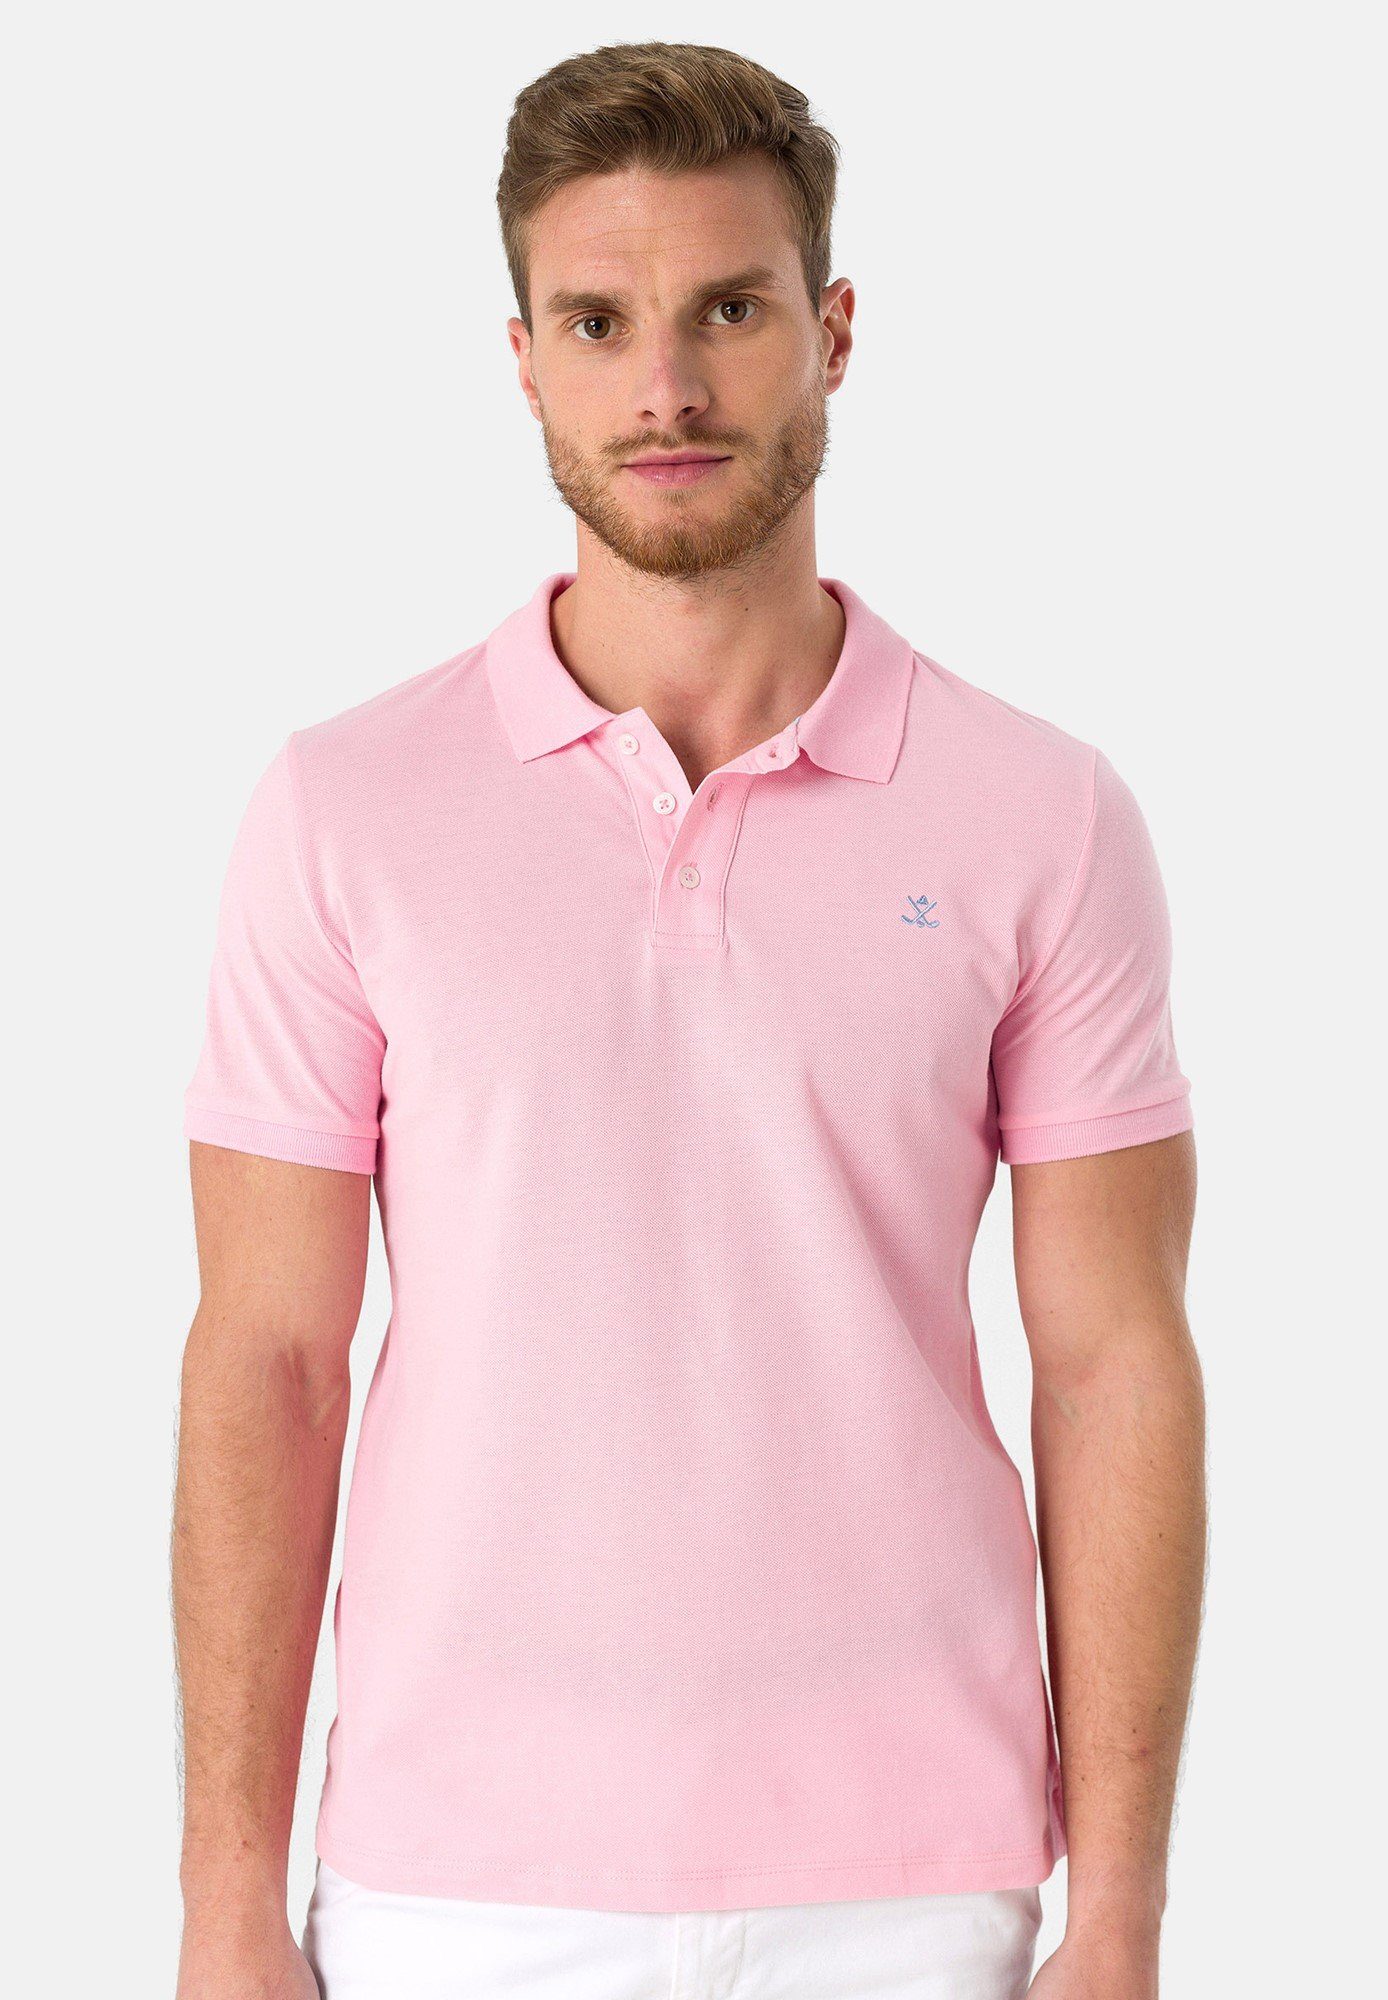 Rosa Poloshirts für Herren kaufen » Pinke Polohemden | OTTO